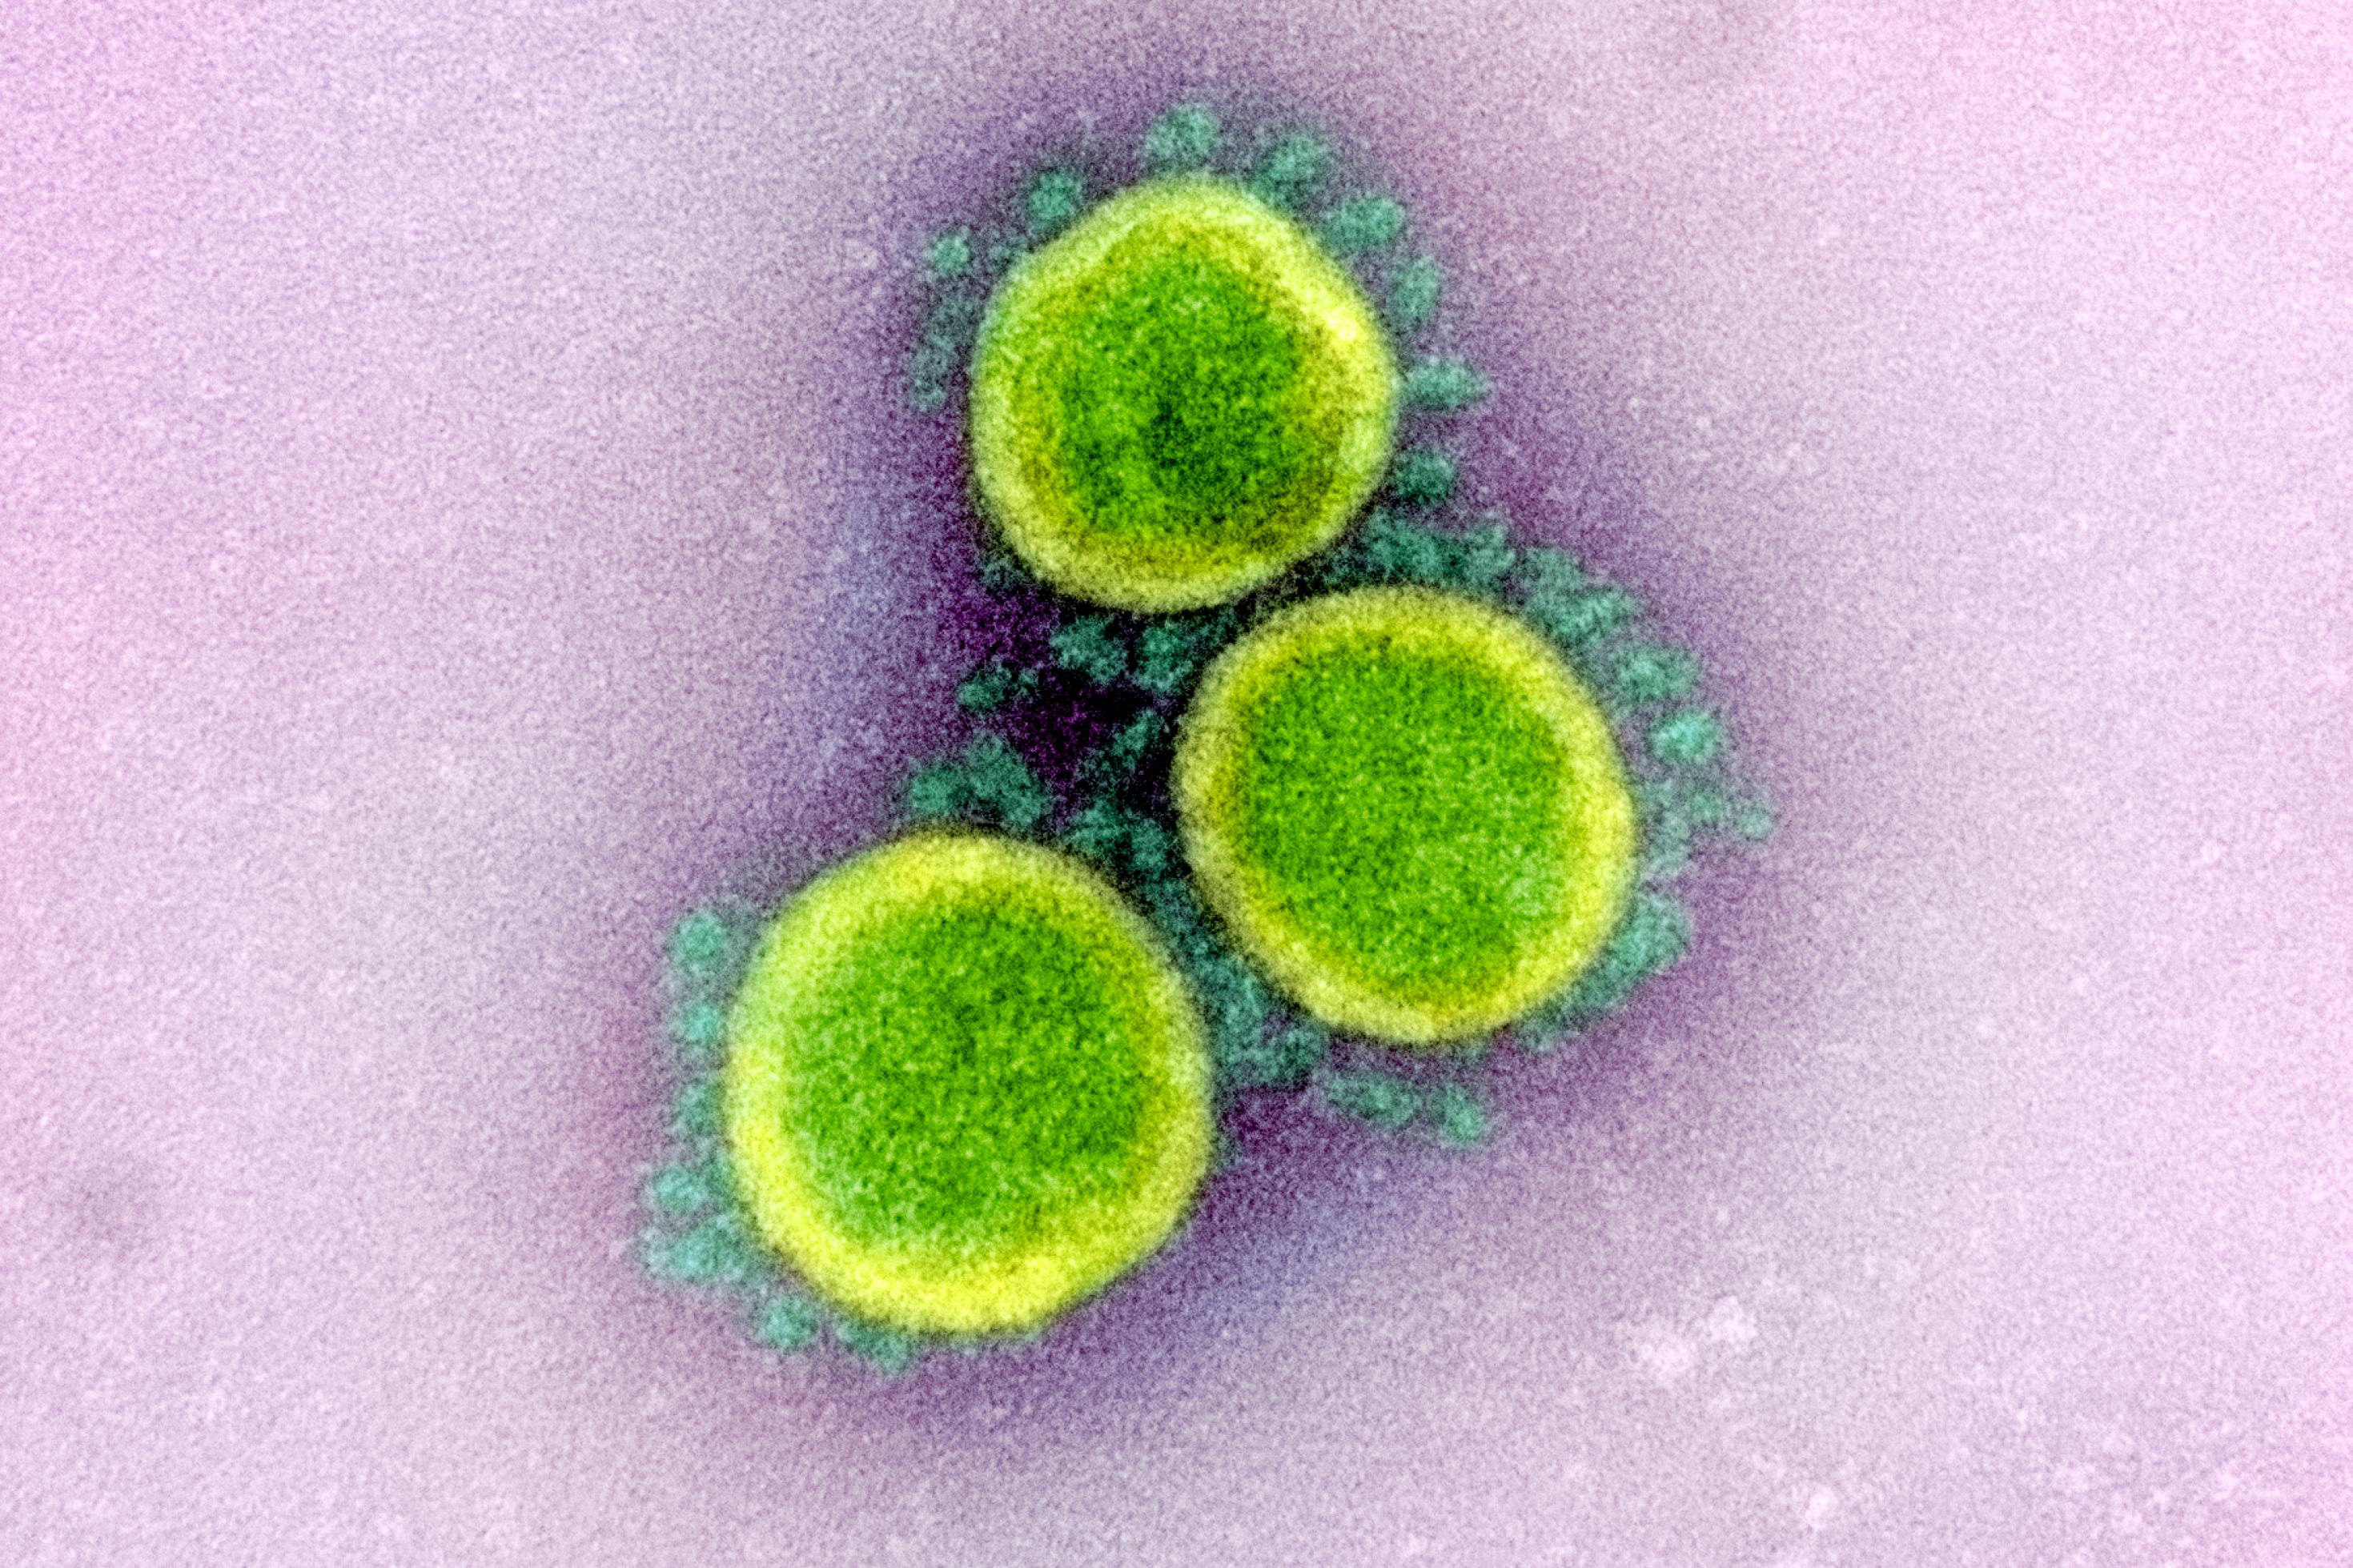 Rasterelektronenmikroskopische Aufnahme von Sars-CoV-2; das Virus ist in hellgrün, seine stacheligen Hüllproteine, die Spike-Proteine, in dunkelgrün dargestellt.